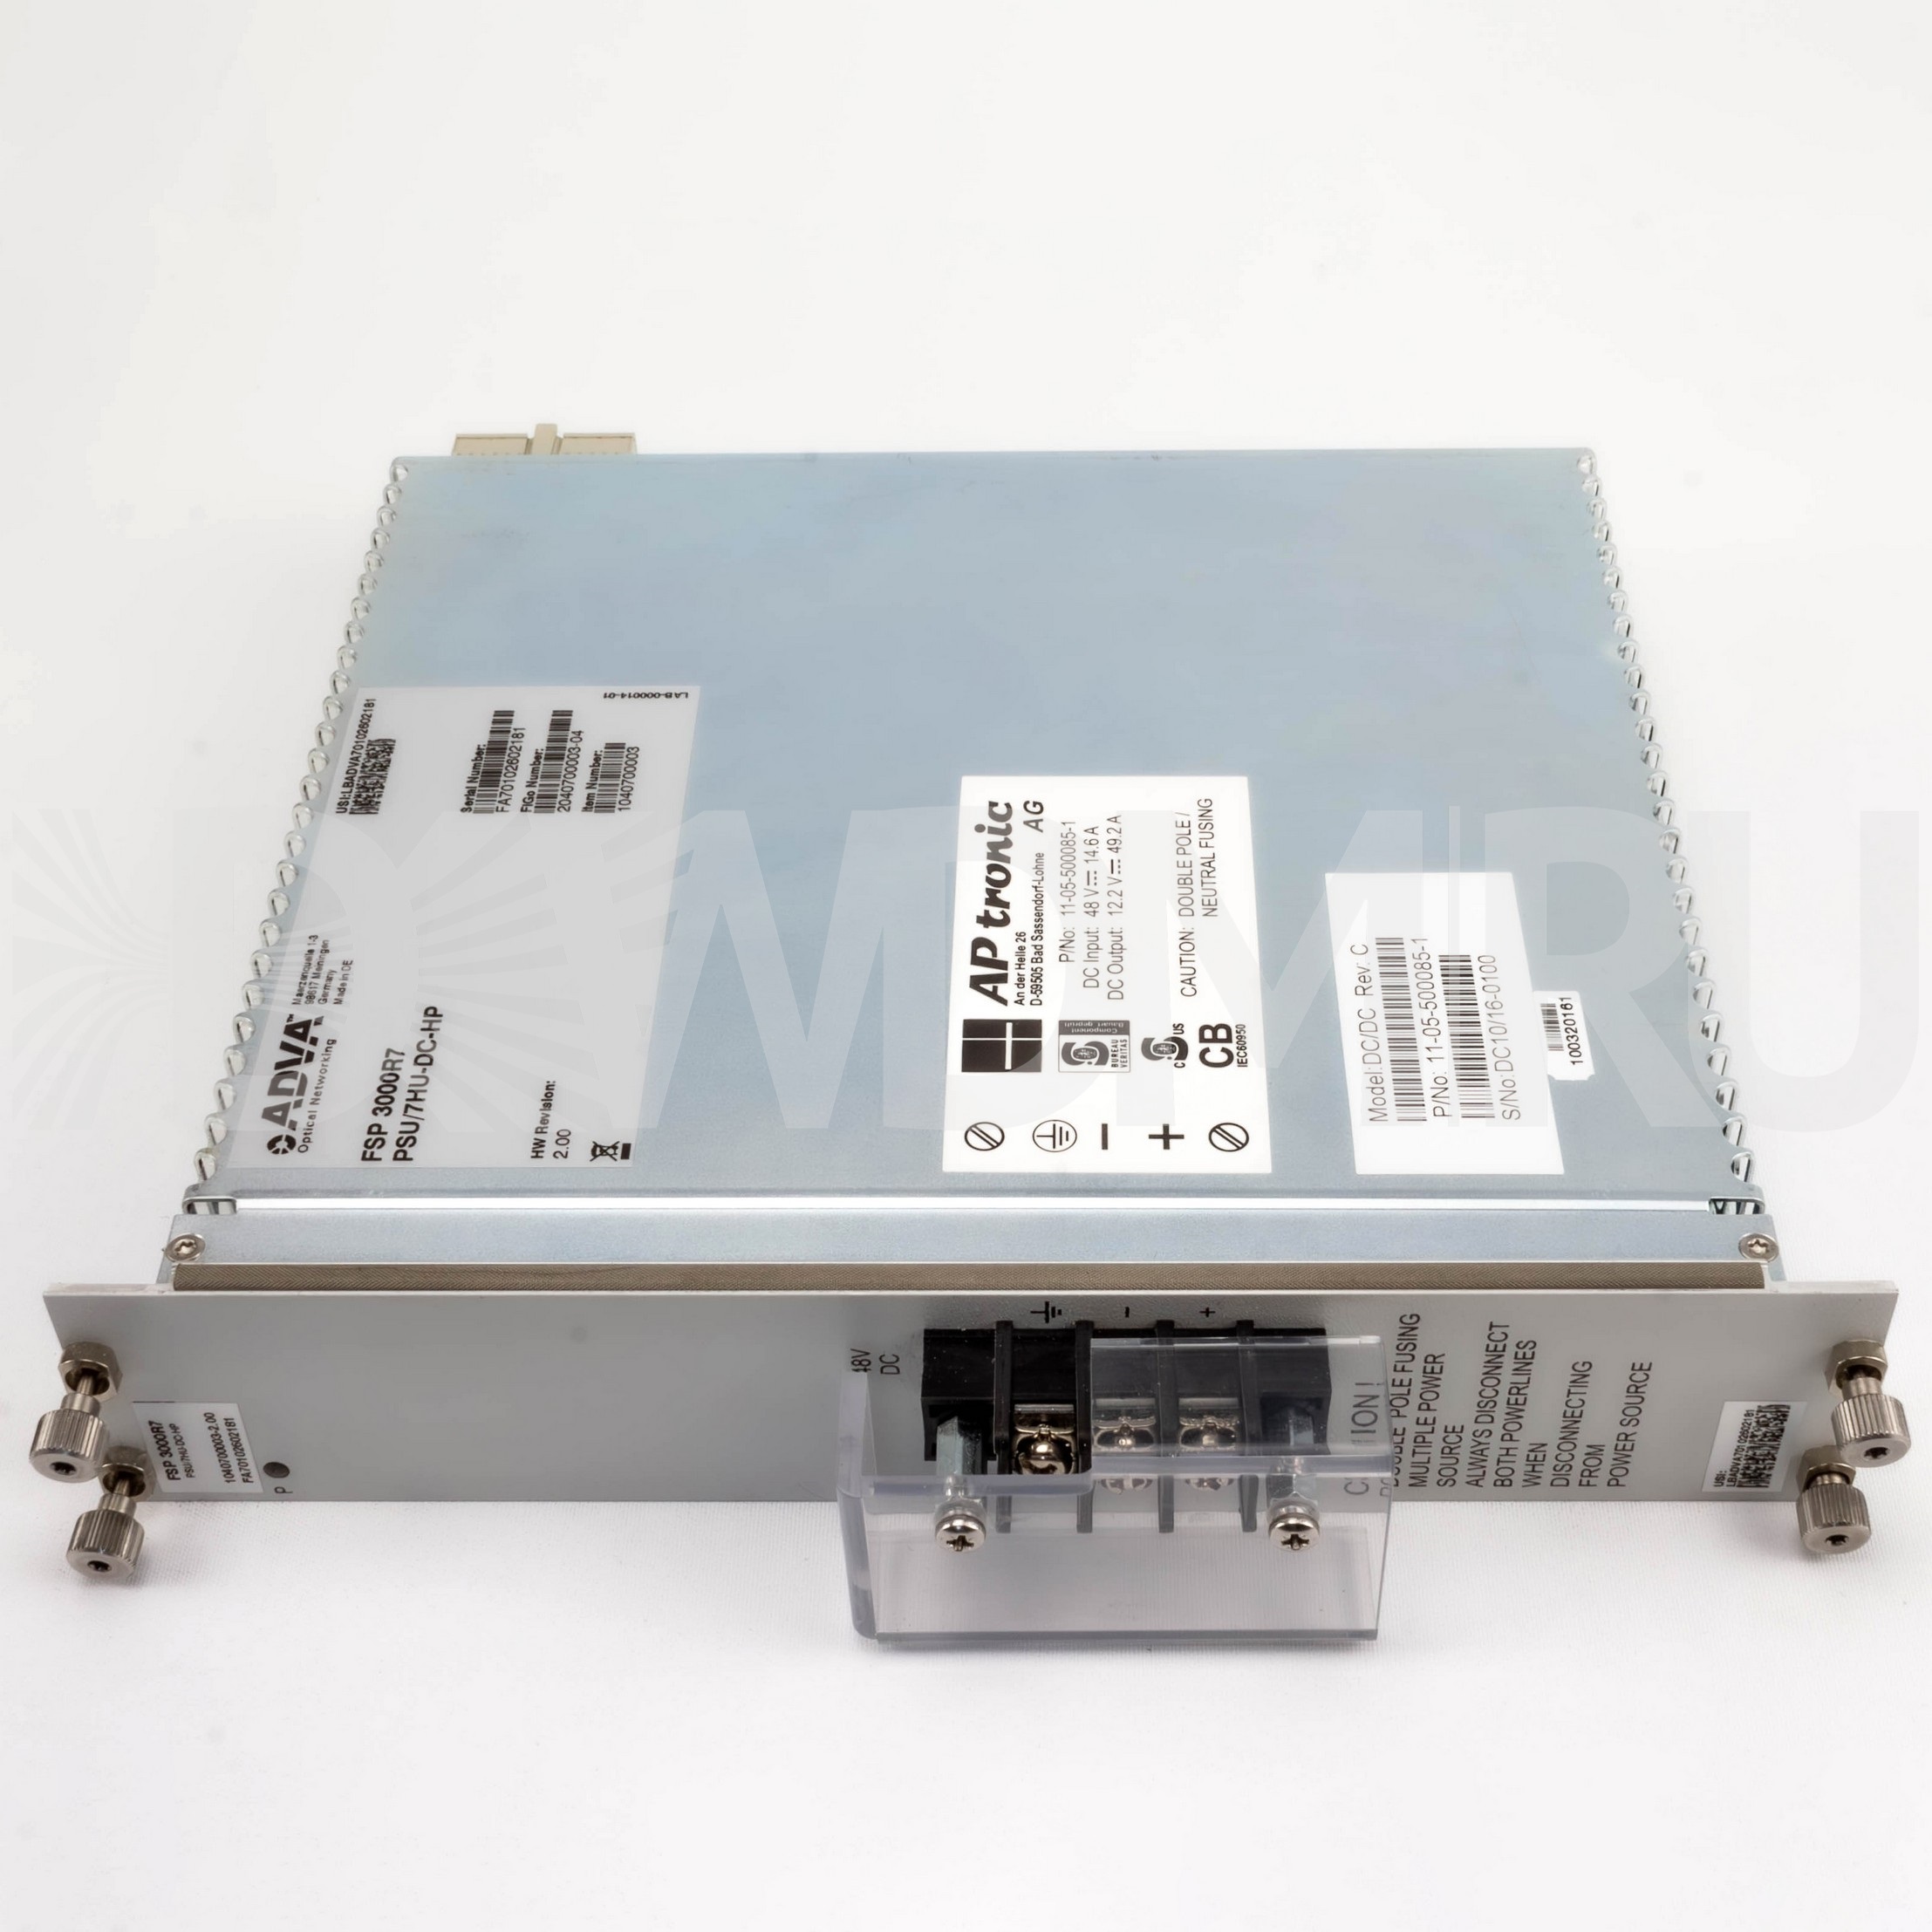 PSU/9HU-DC Power Supply Module (1000W) DC for SH9HU ADVA Optical pn1040700041